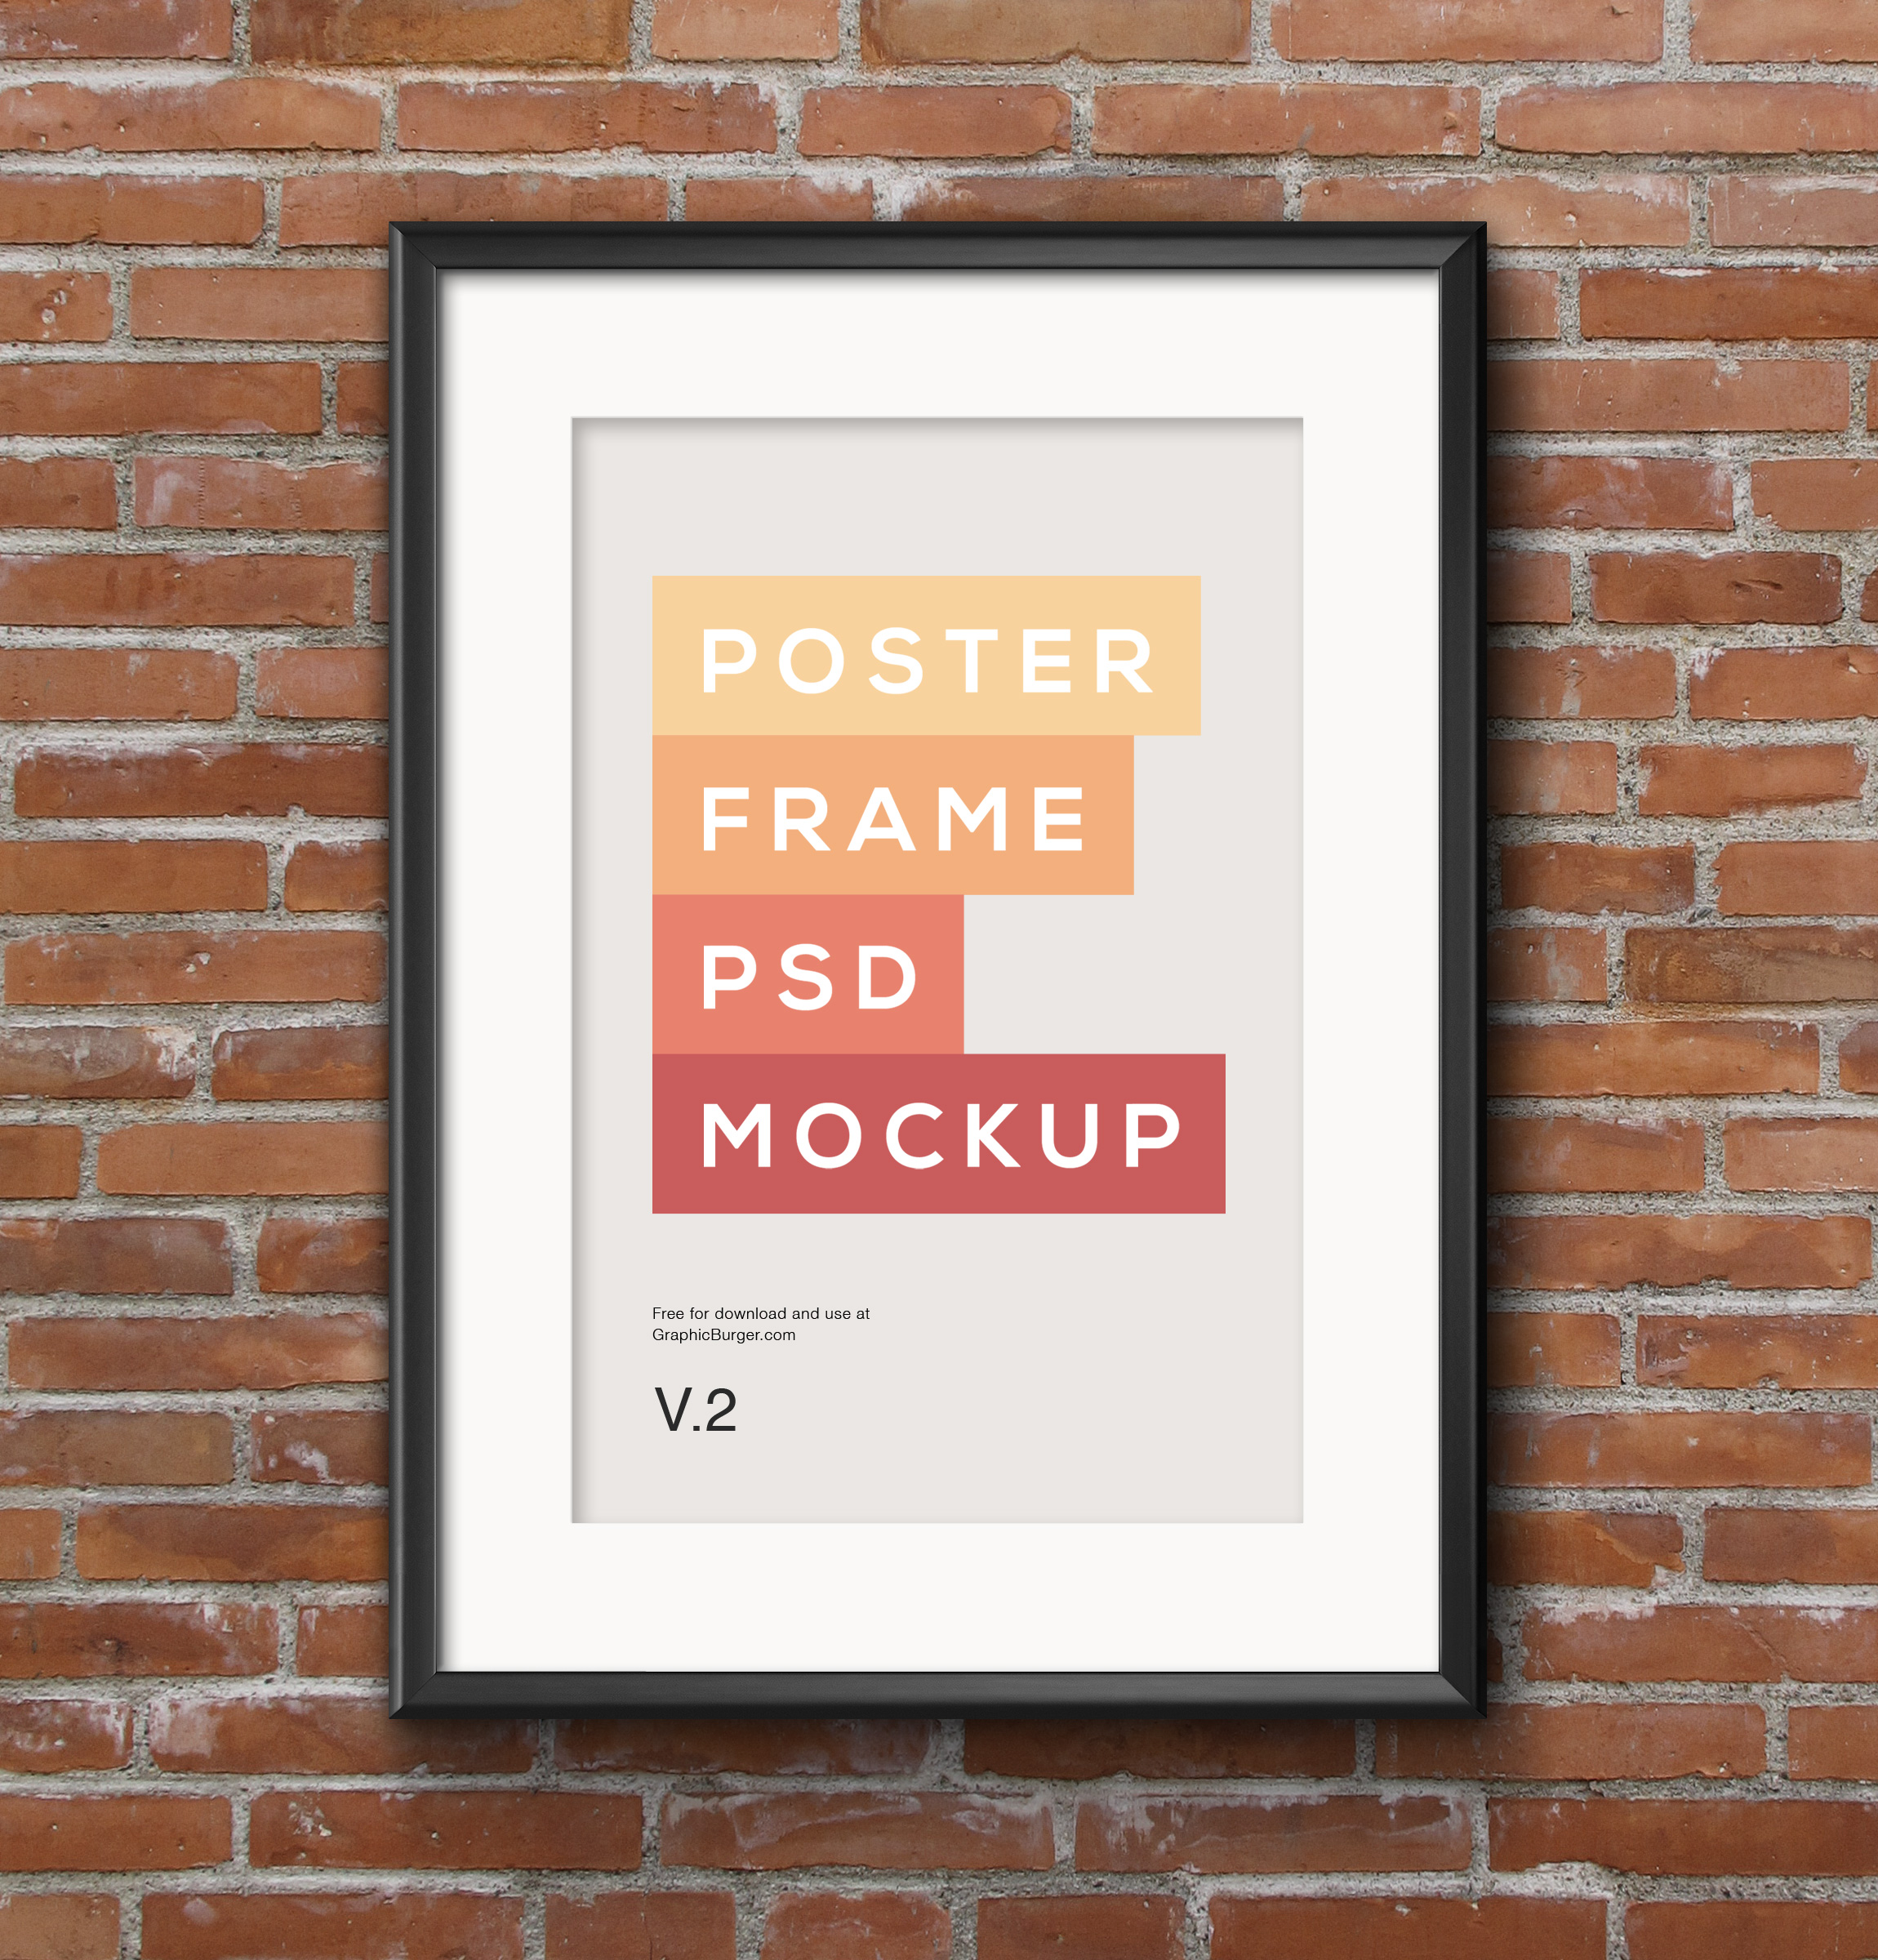 20 PSD Poster Framed Images